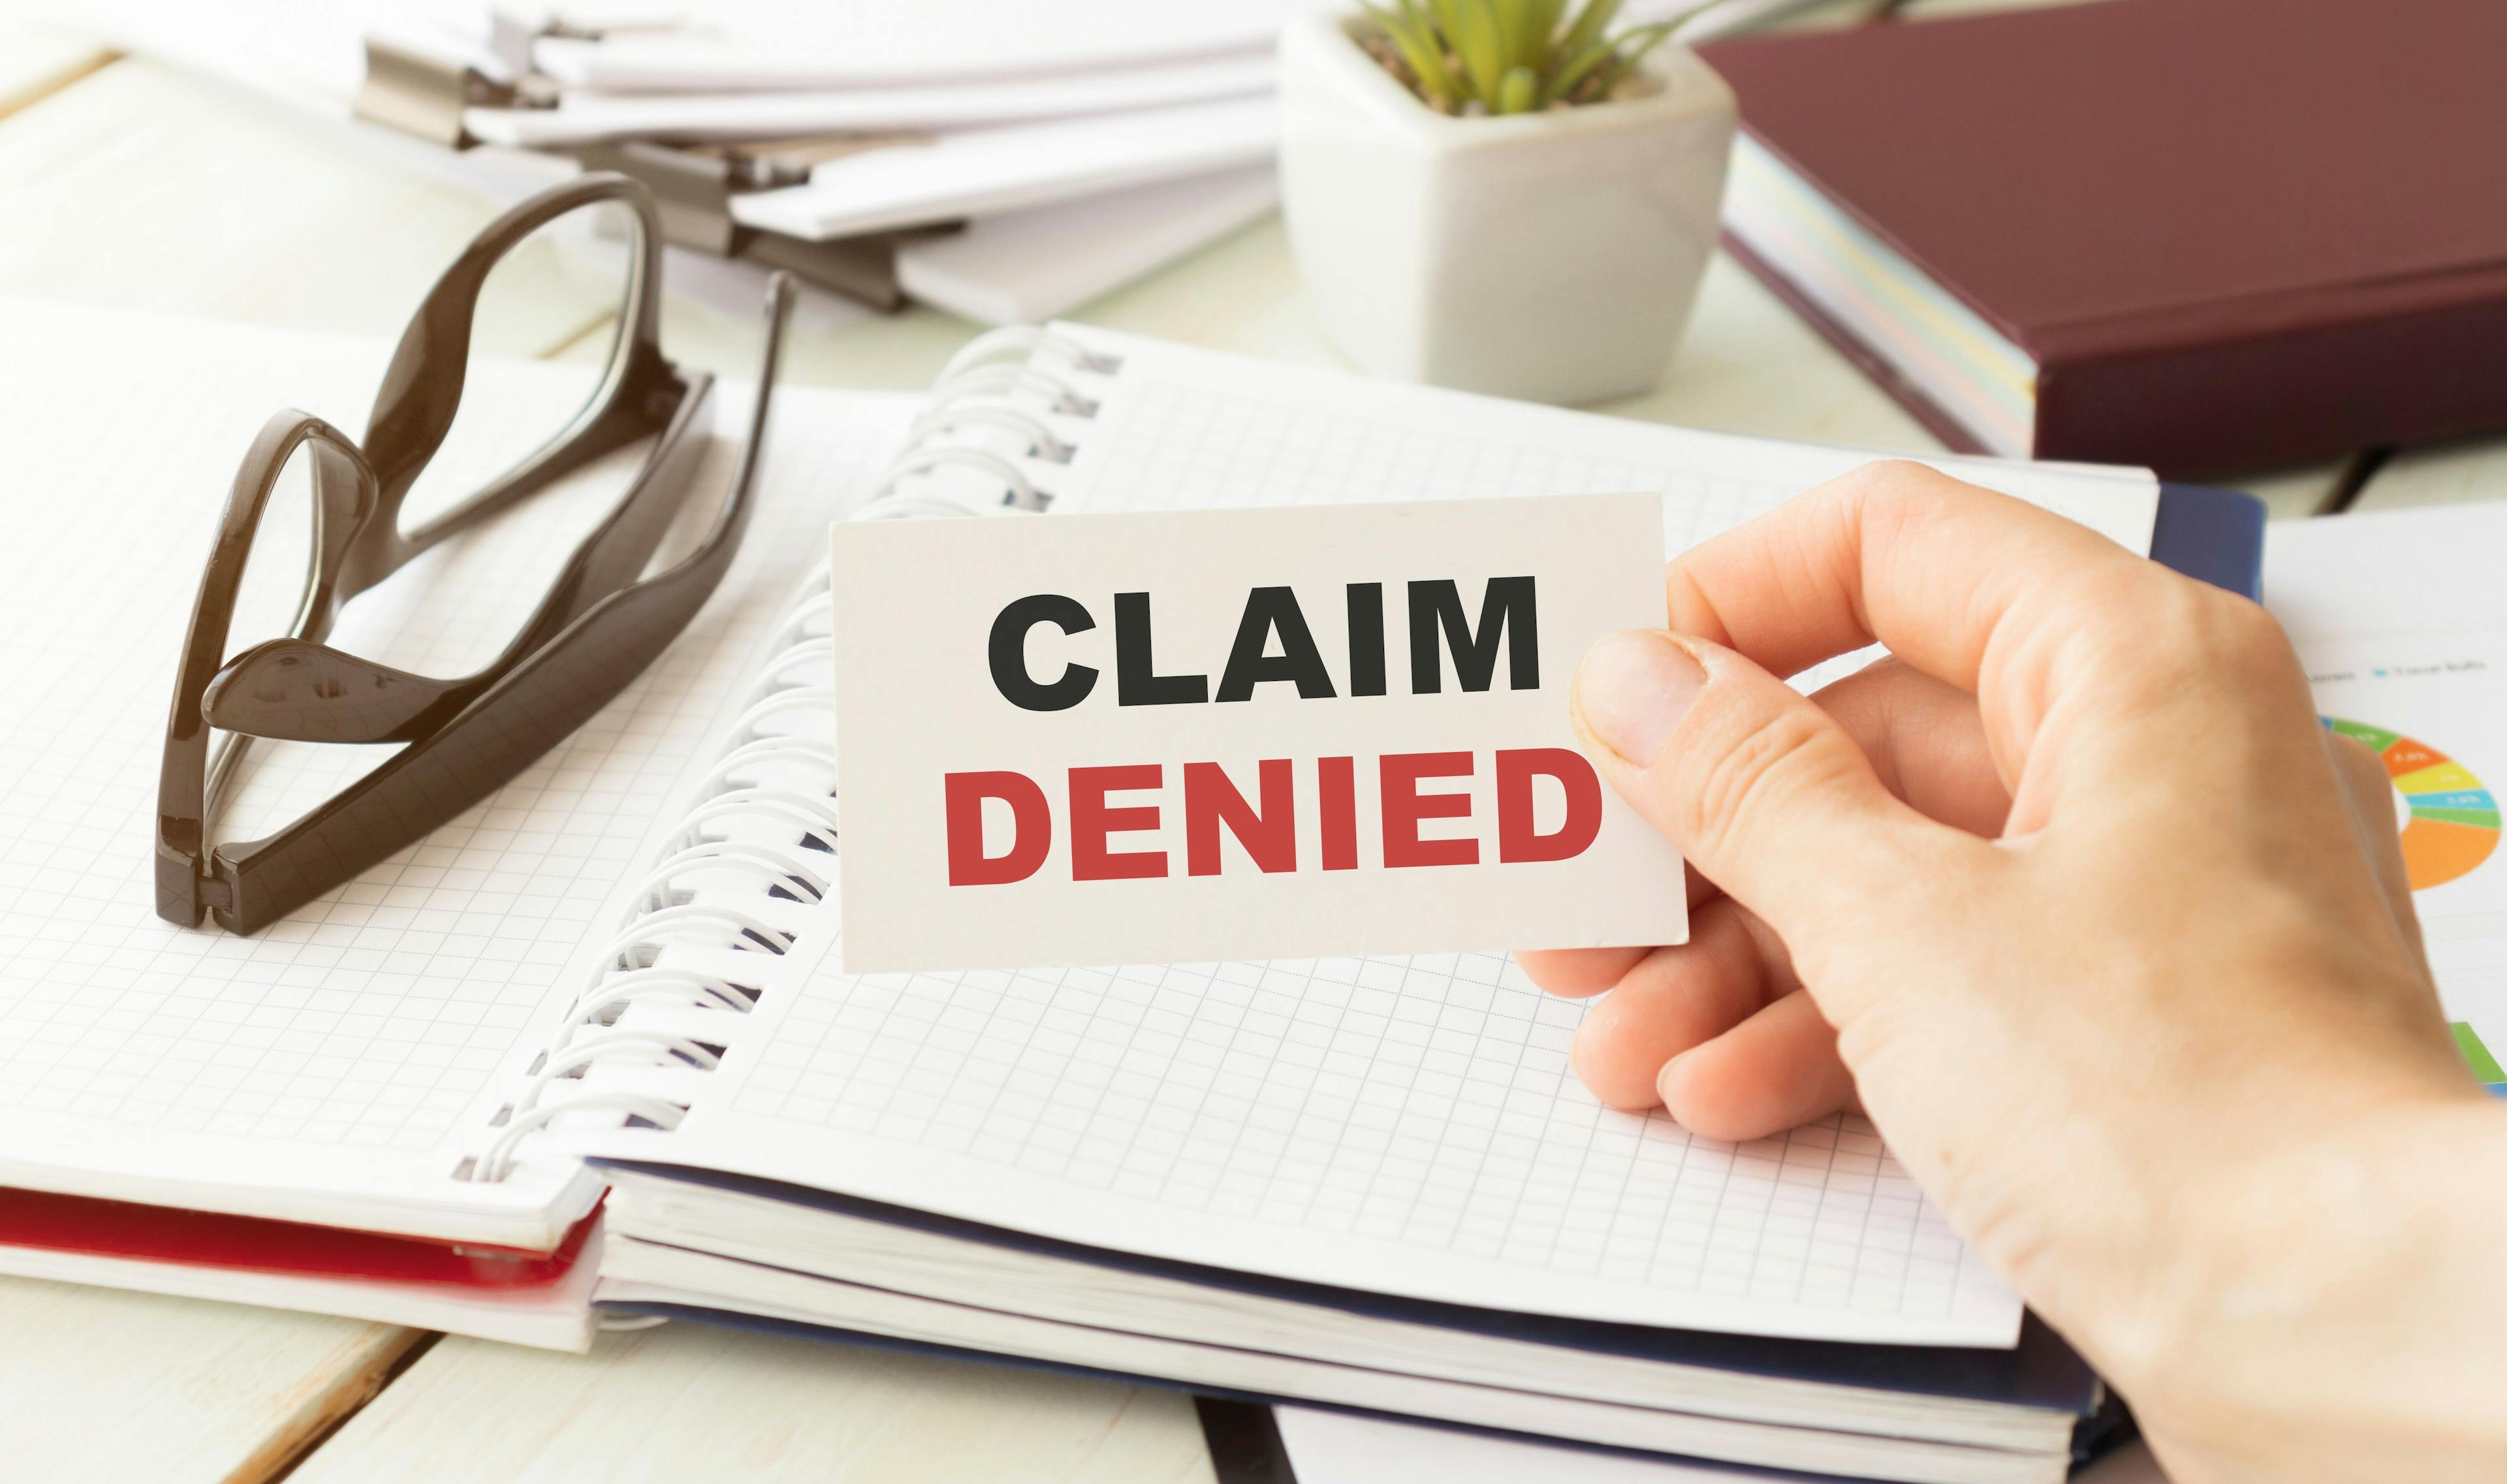 claims denied | © Inna - stock.adobe.com